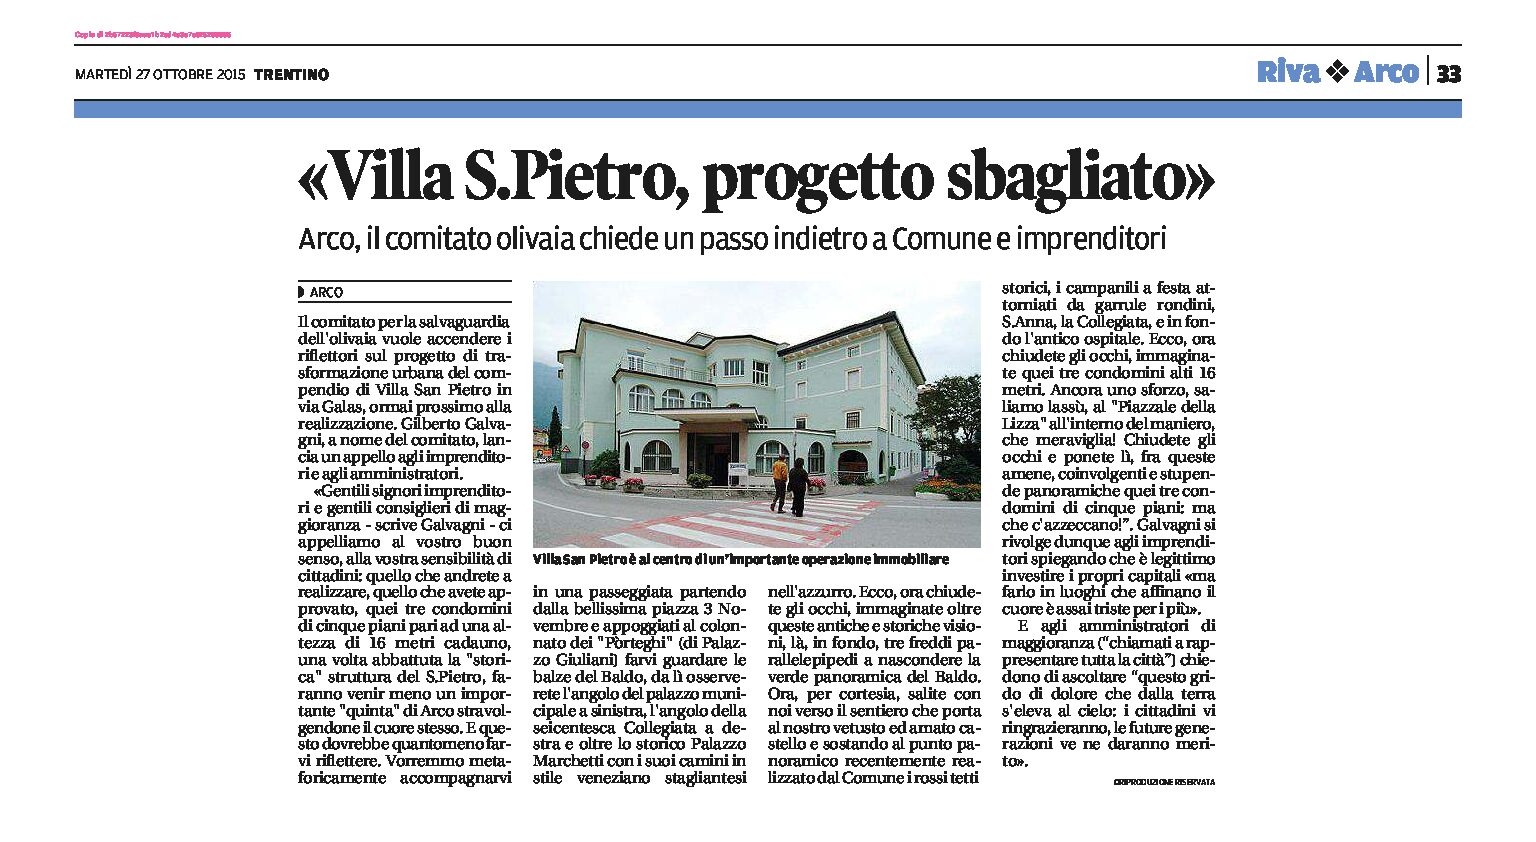 Arco, Villa S.Pietro: progetto sbagliato. Il Comitato Olivaia chiede un passo indietro